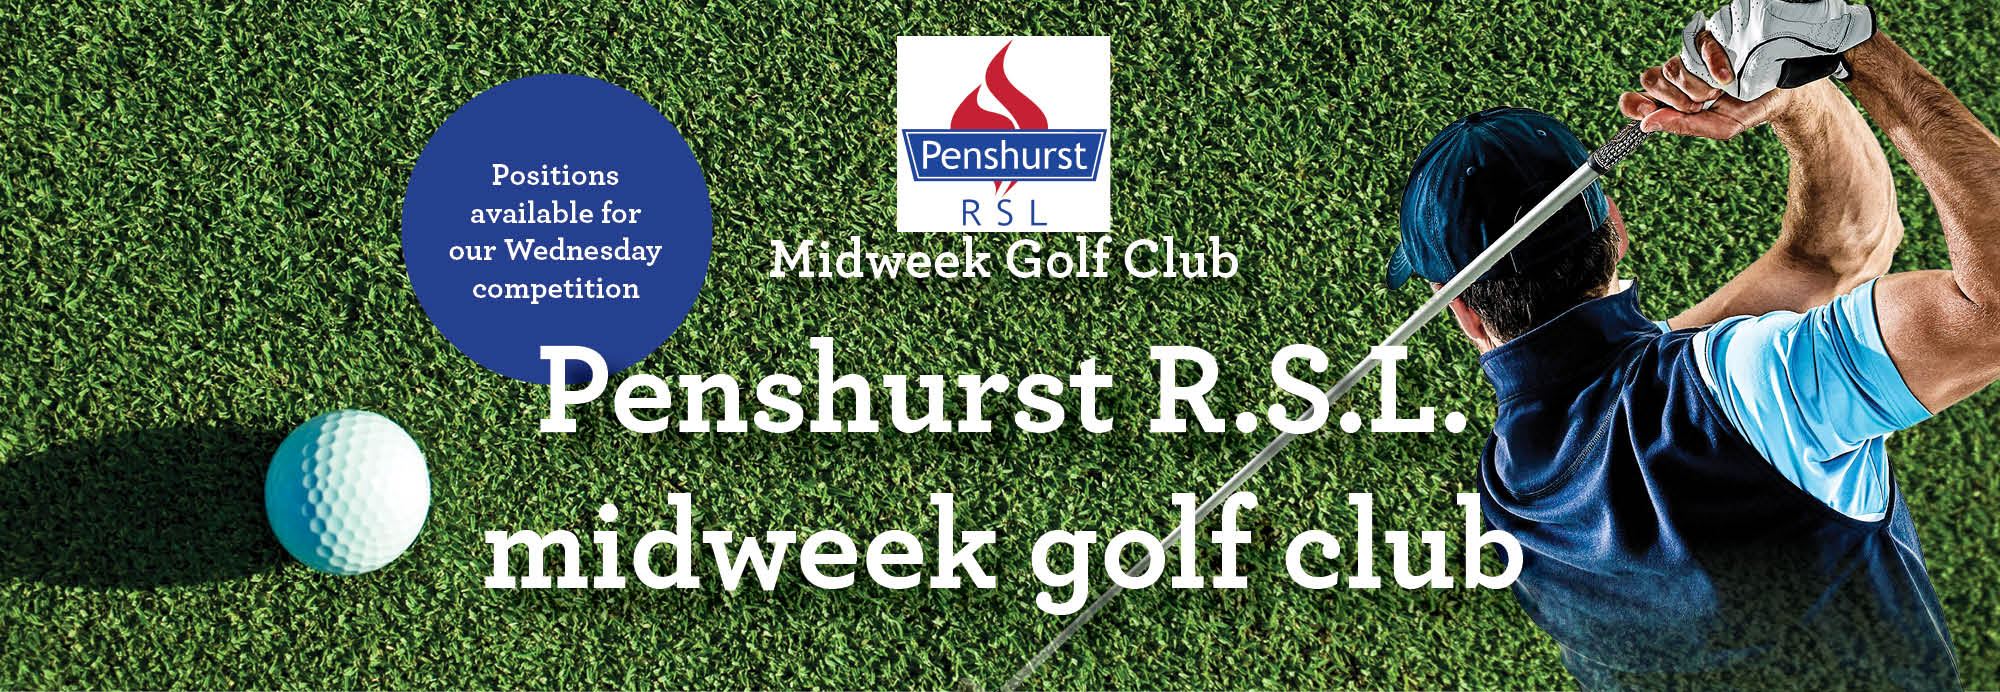 Social Golf - Penshurst RSL